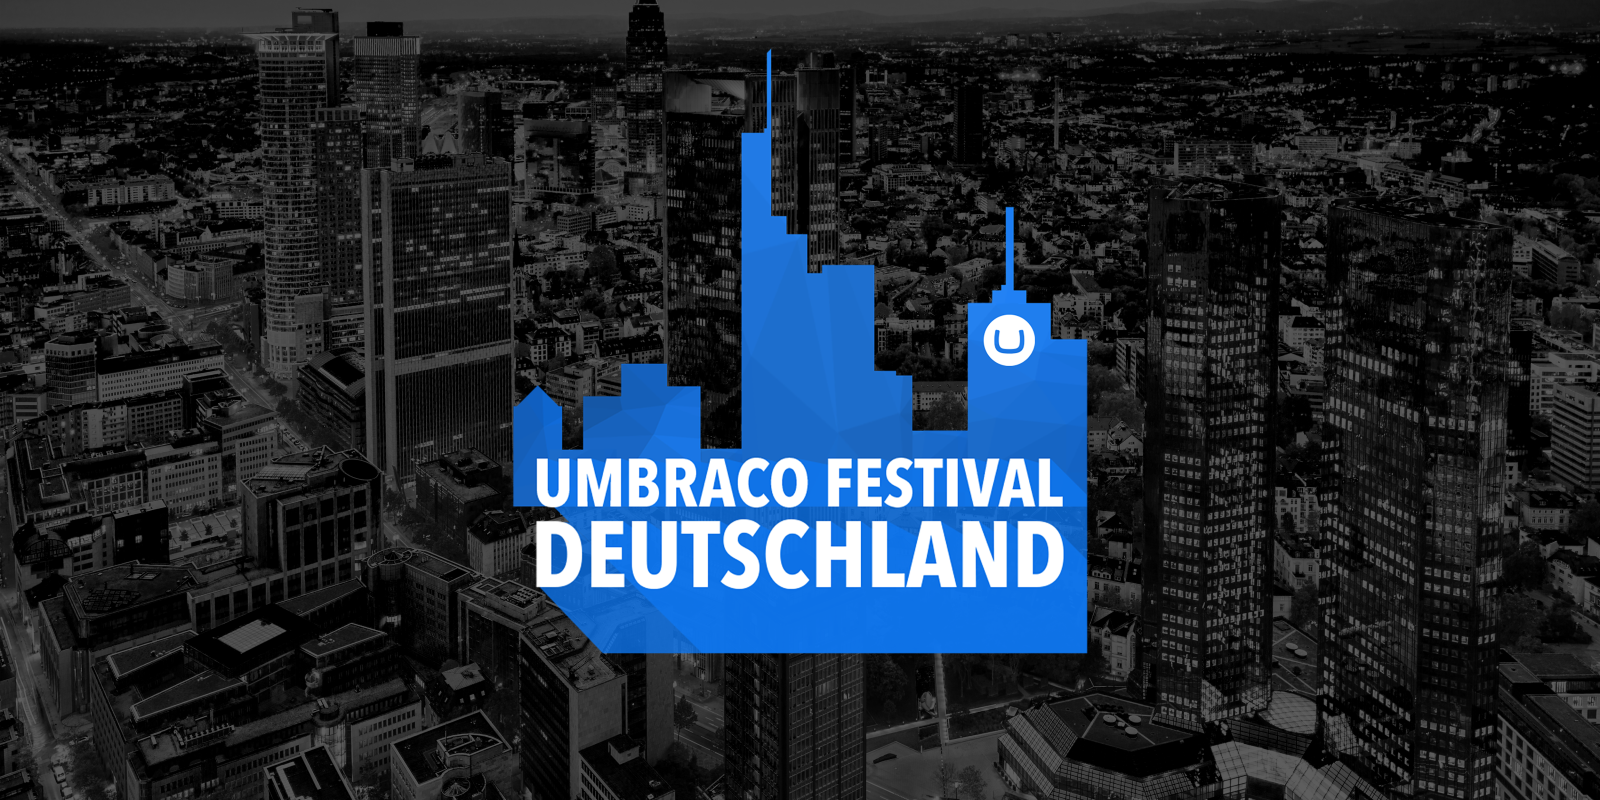 Vor einem abgedunkelten Schwarzweißfoto einer Großstadt eine blaue Silhouette von Hochhäusern, darin Text: Umbraco Festival Deutschland